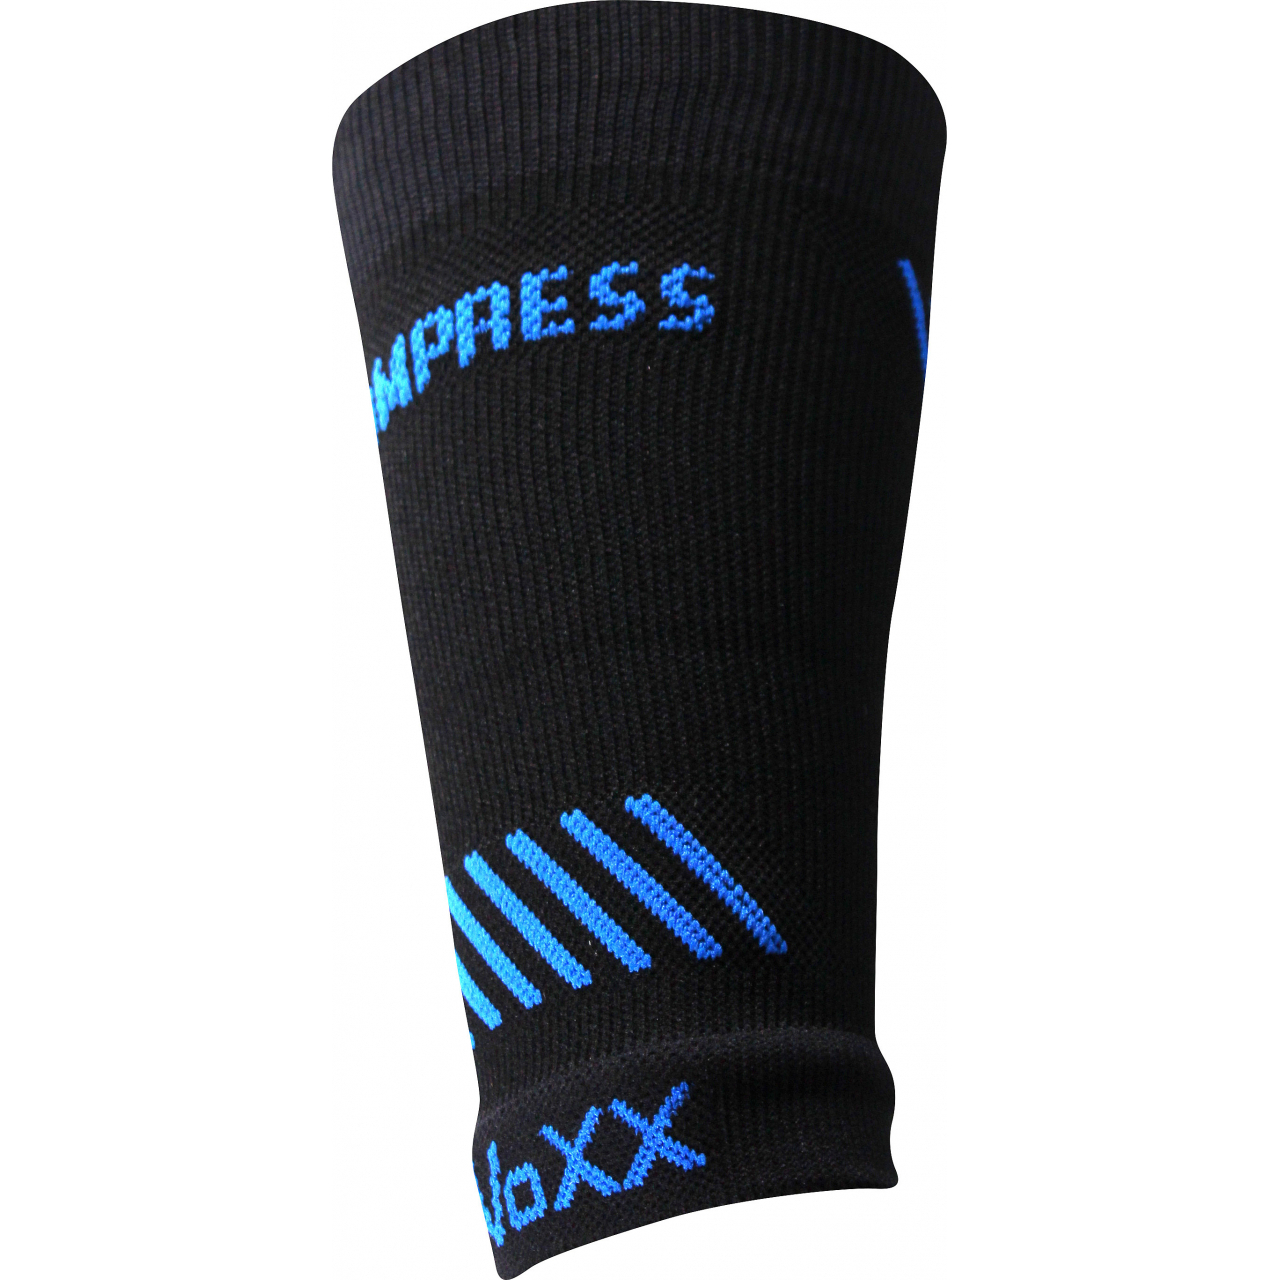 Návlek kompresní Voxx Protect zápěstí - černý-modrý, L/XL